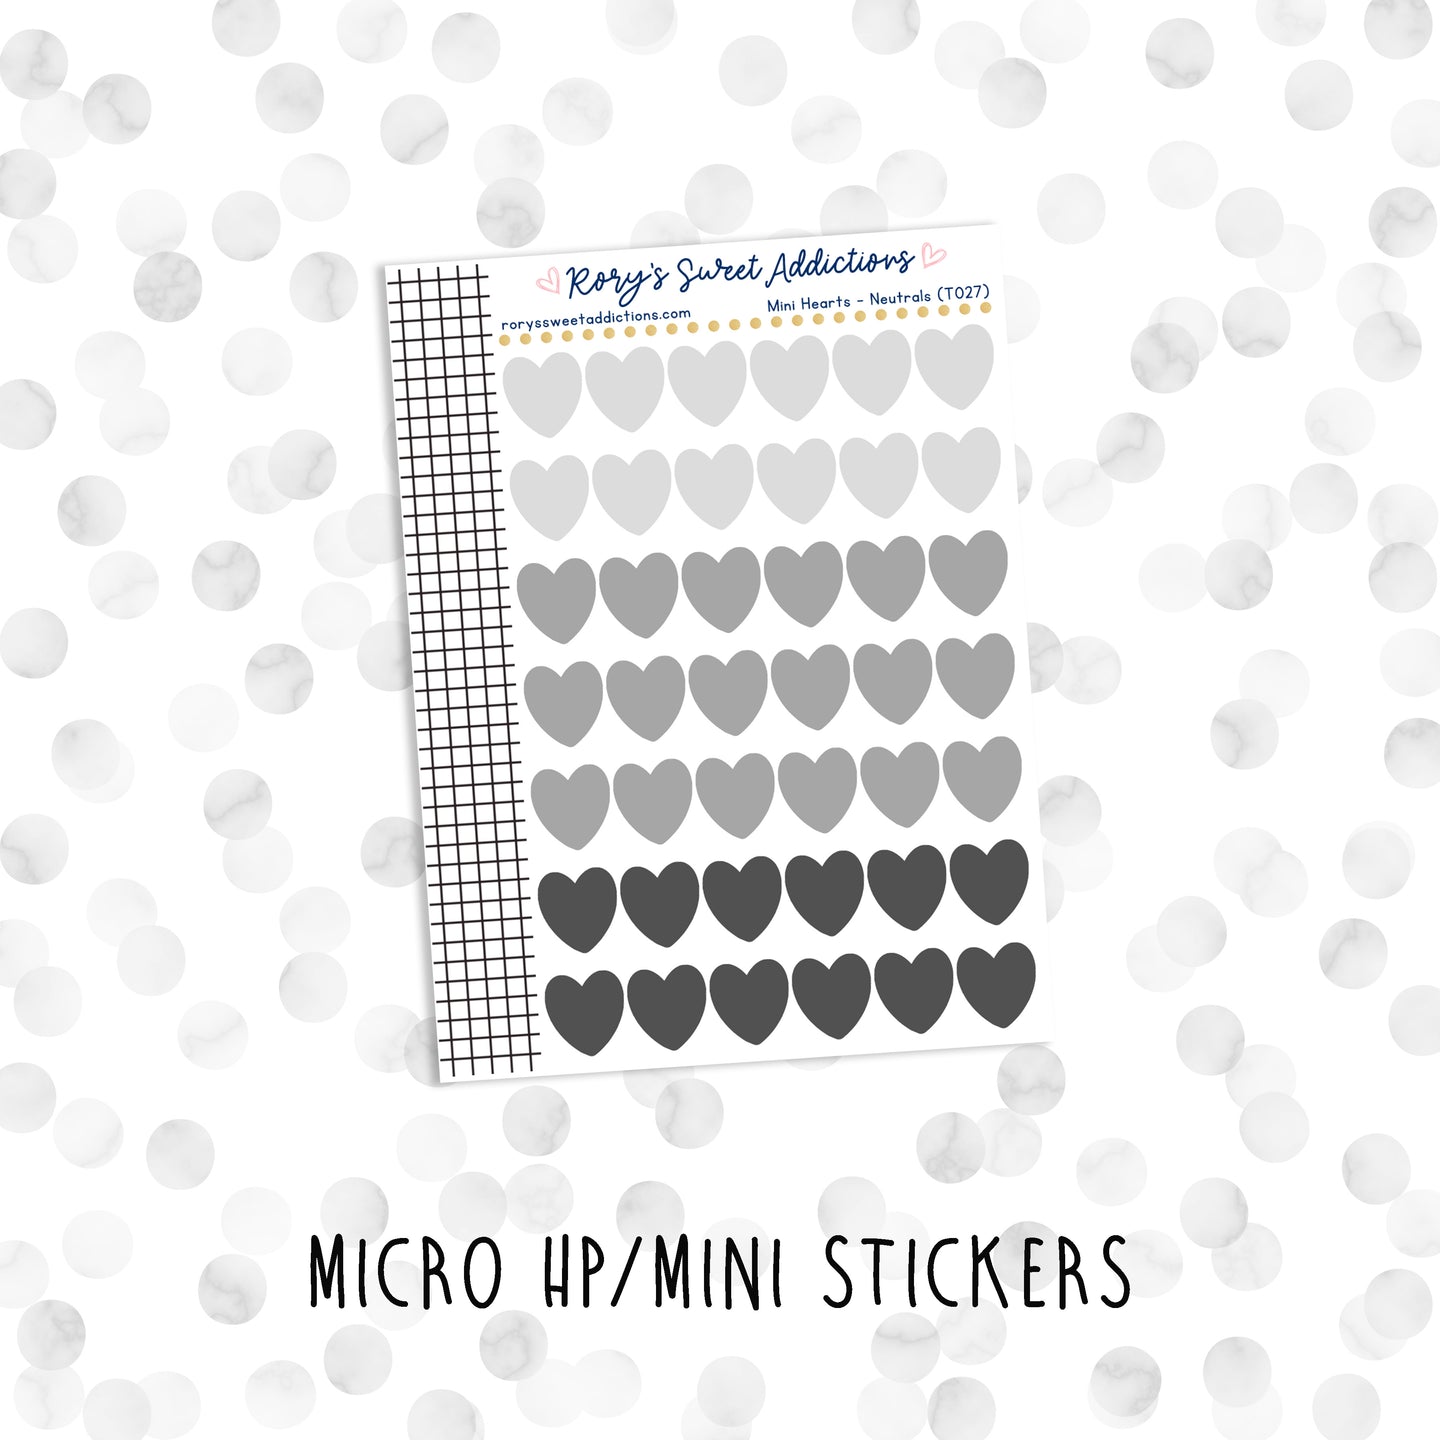 Mini Hearts - Neutrals // Micro HP - Mini Stickers